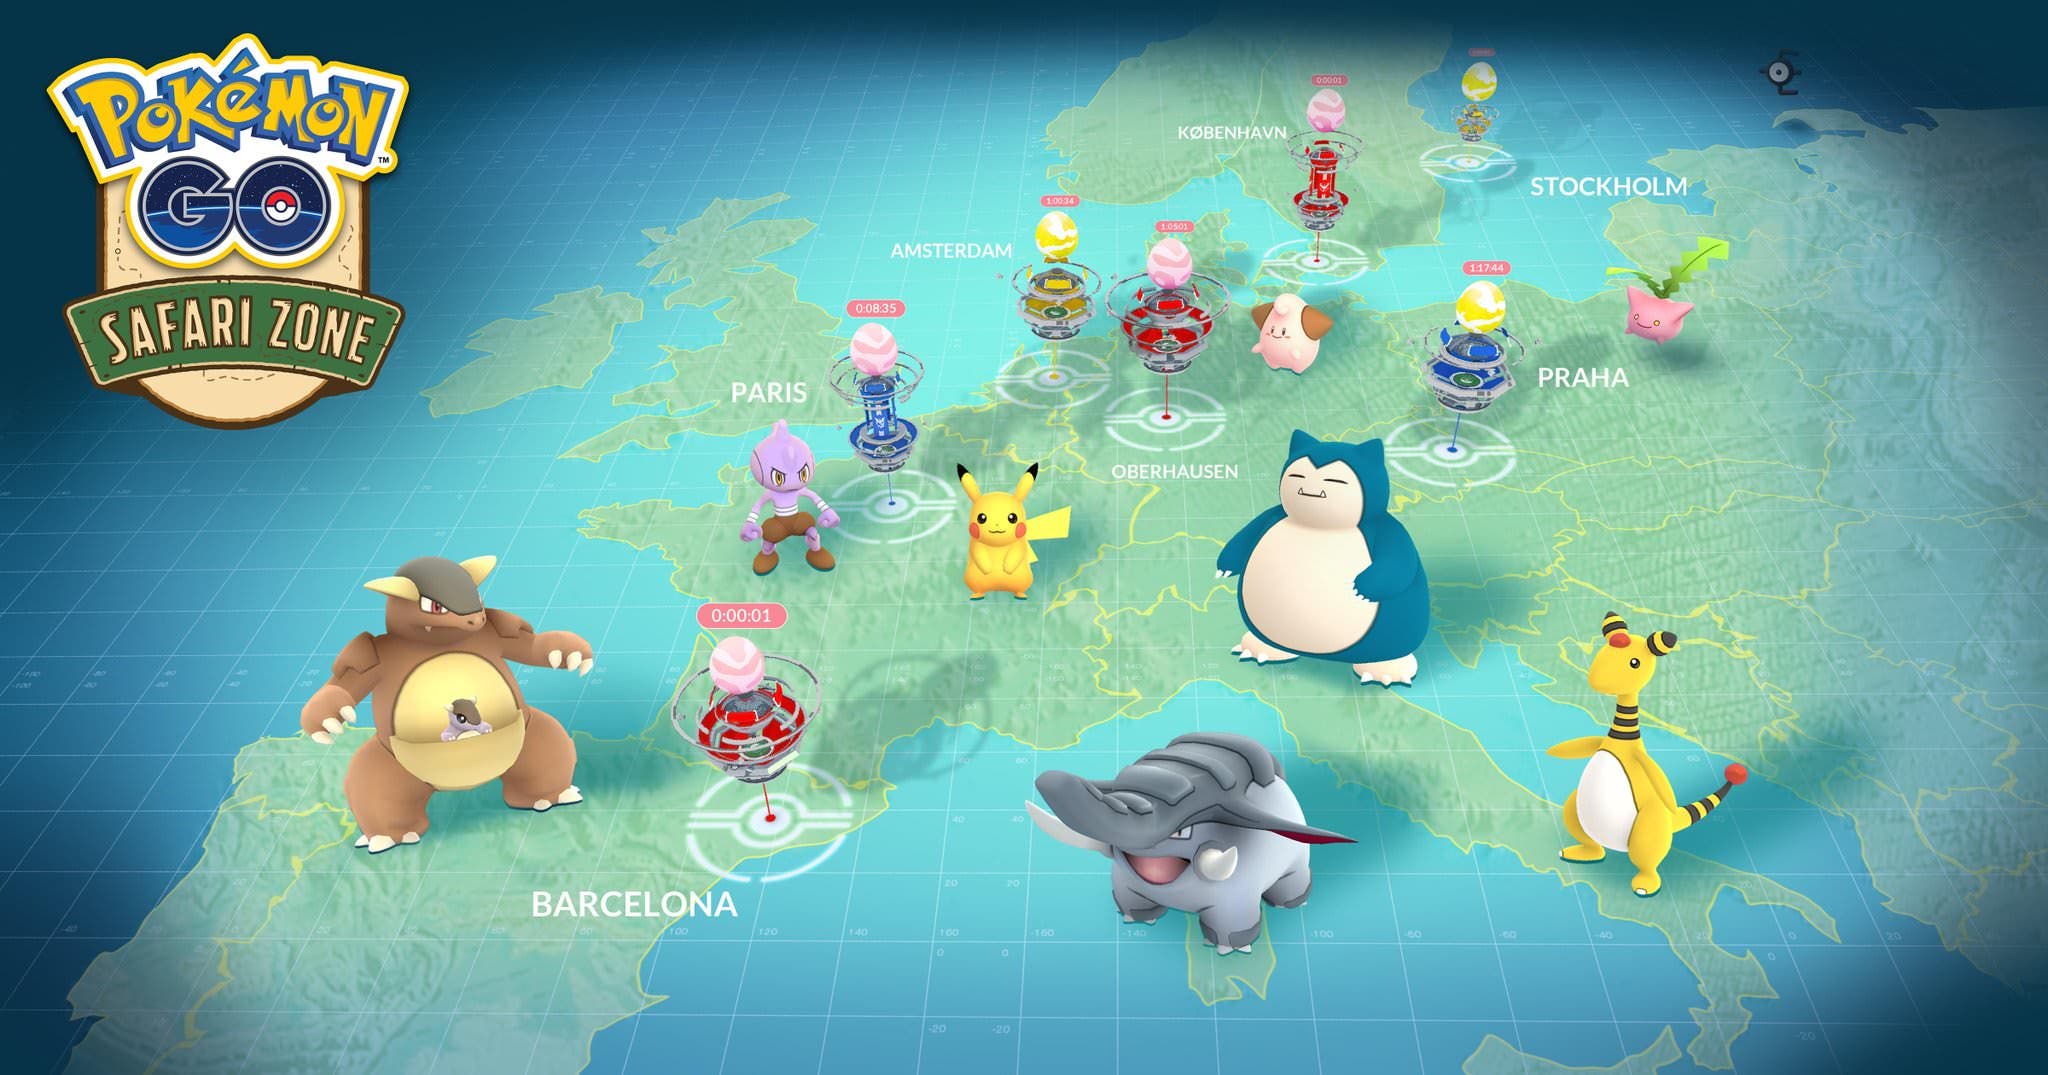 Niantic comparte más detalles sobre el evento Pokémon GO Safari Zone de Europa